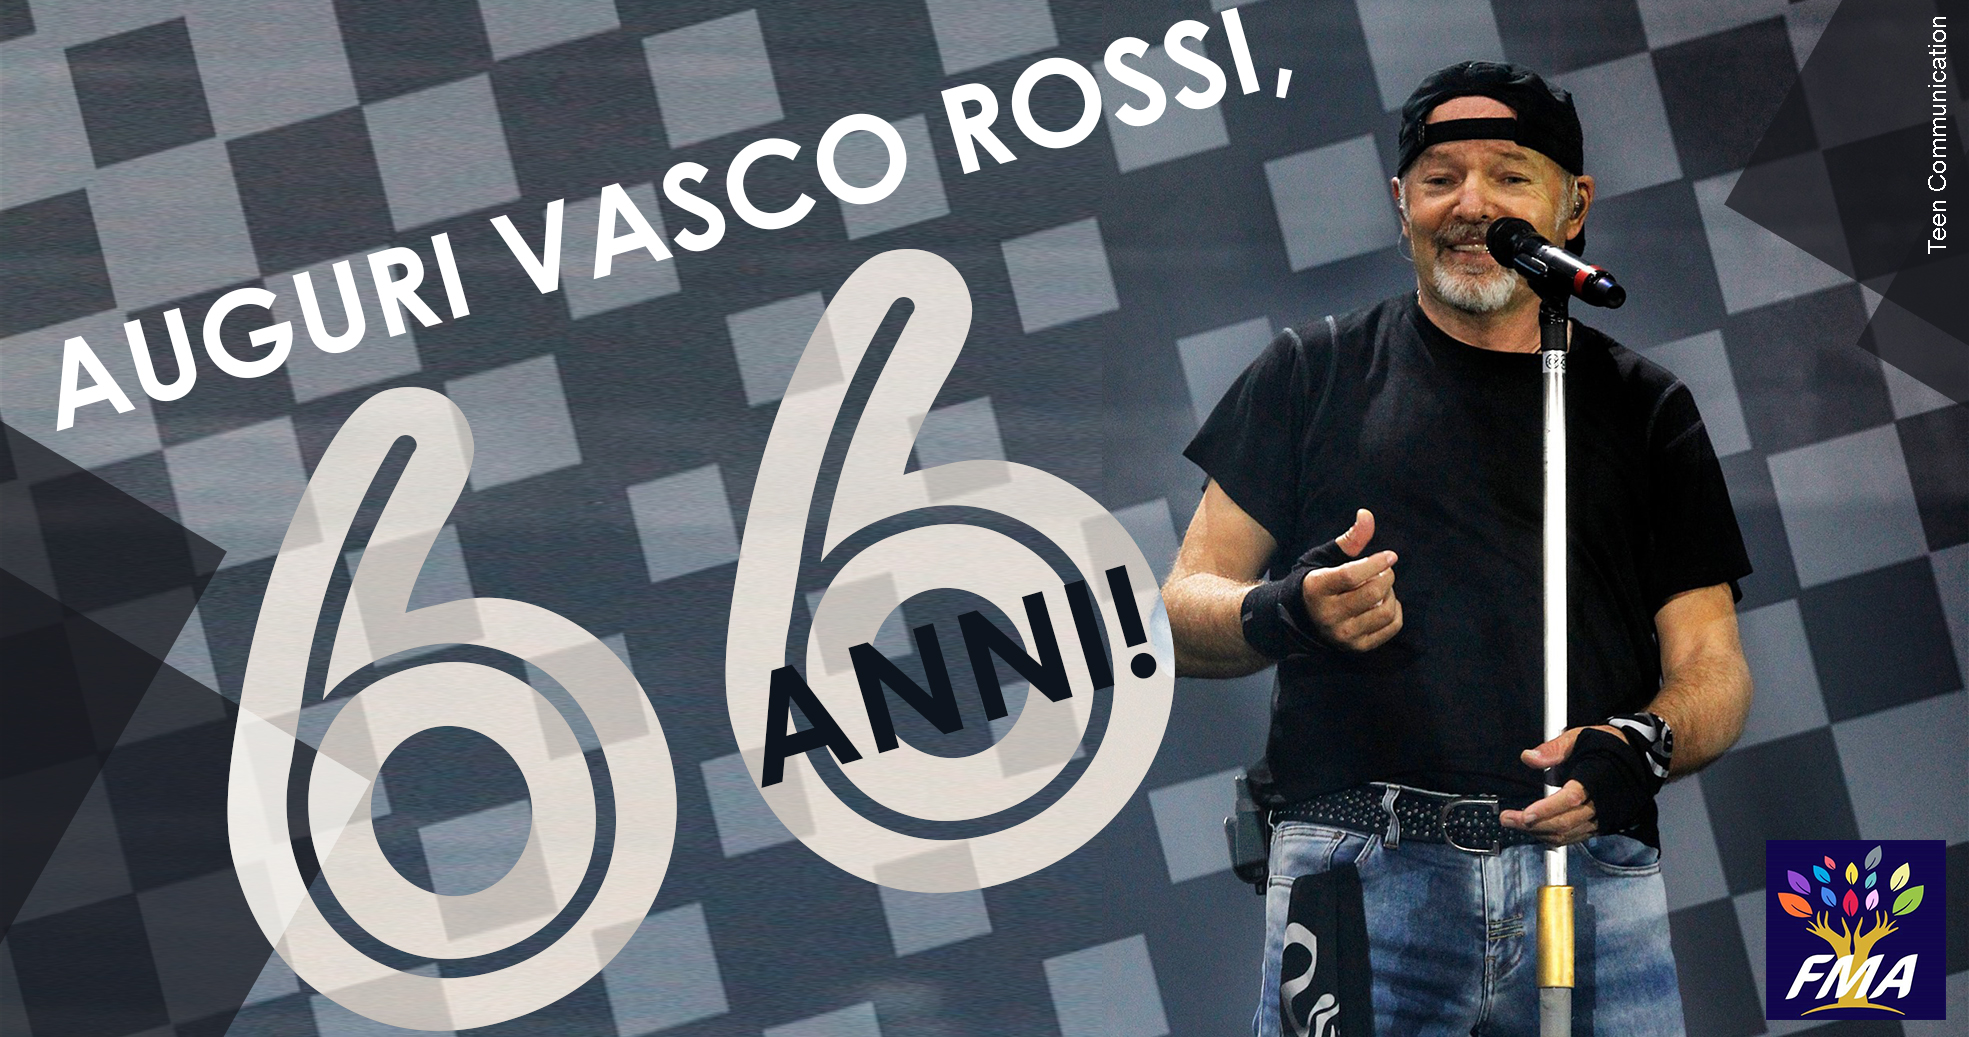 Auguri Vasco Rossi